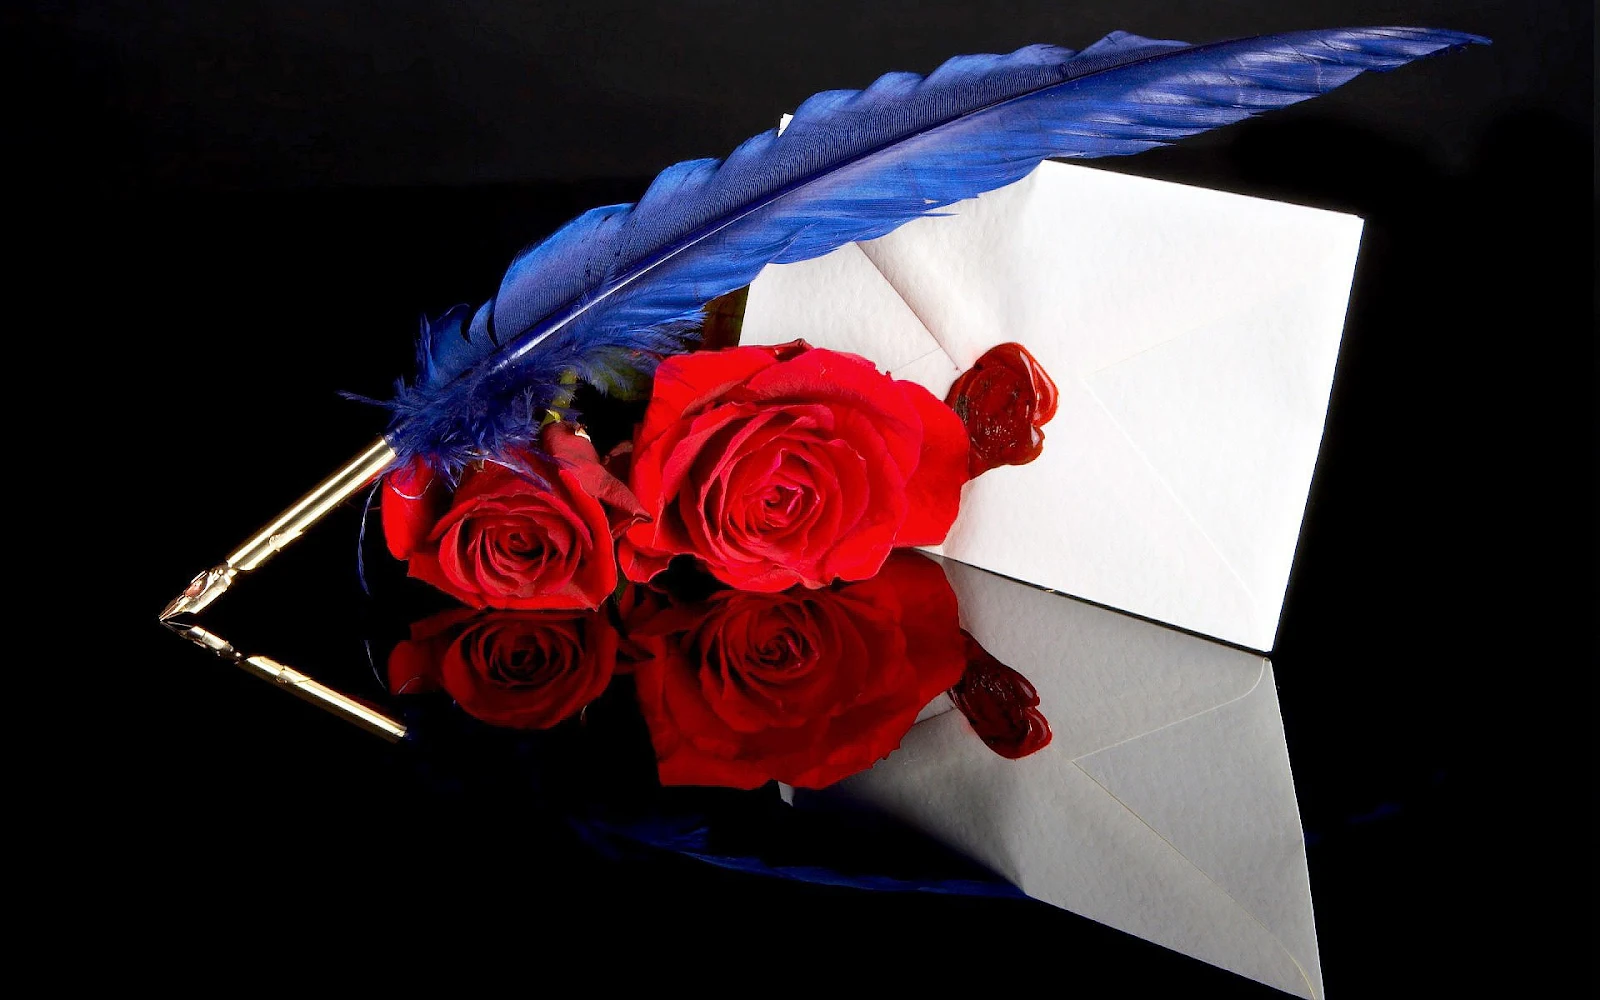 Witte envelop, blauwe veer als pen en rode rozen